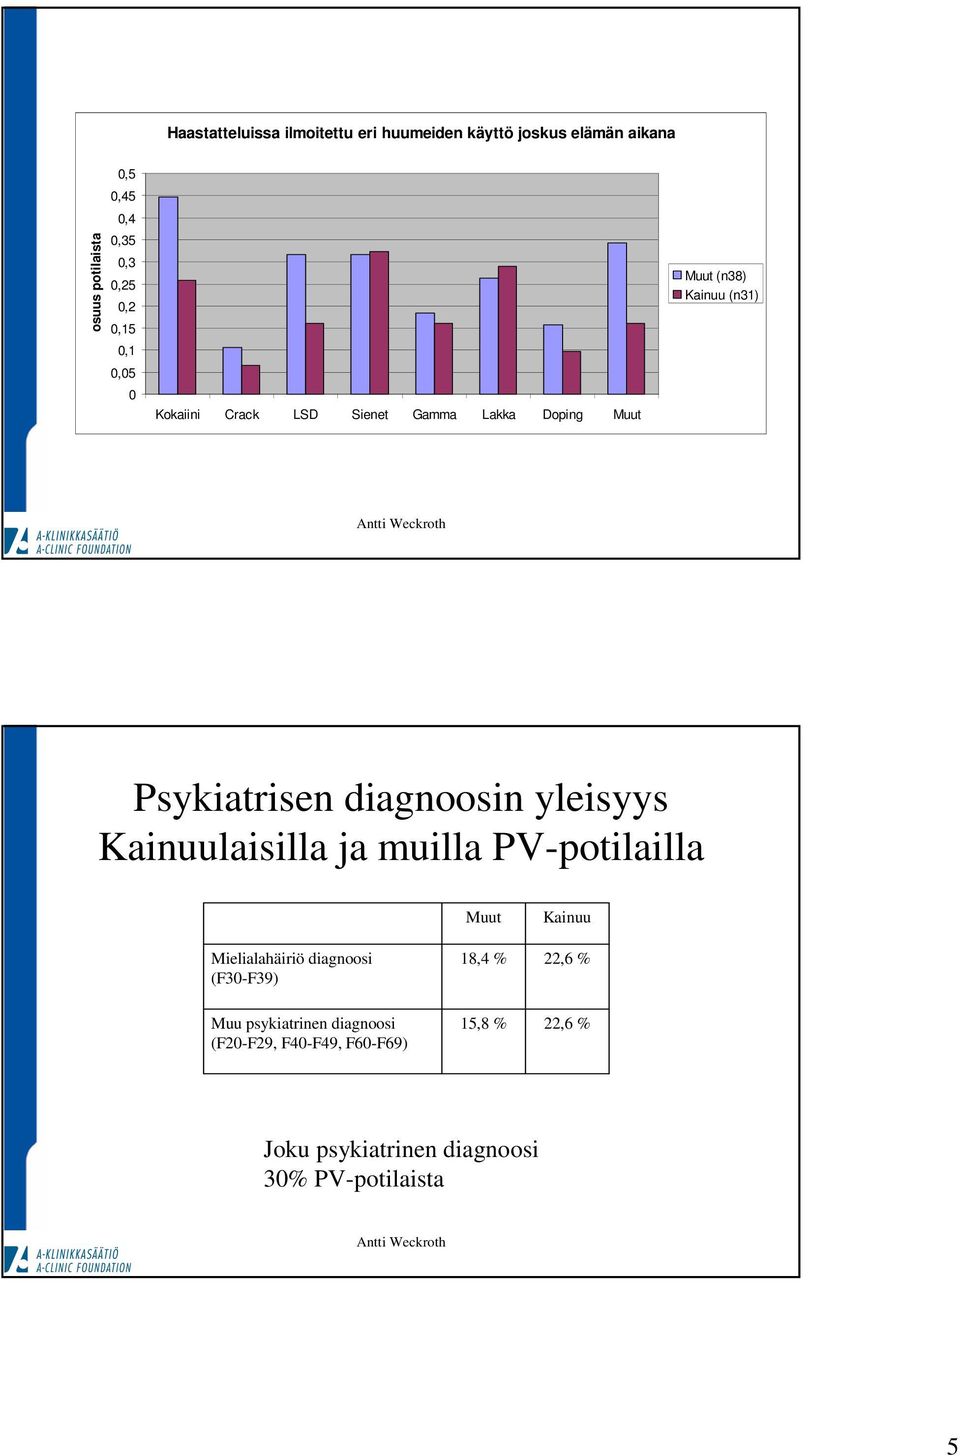 (n31) Psykiatrisen diagnoosin yleisyys Kainuulaisilla ja muilla PV-potilailla Mielialahäiriö diagnoosi